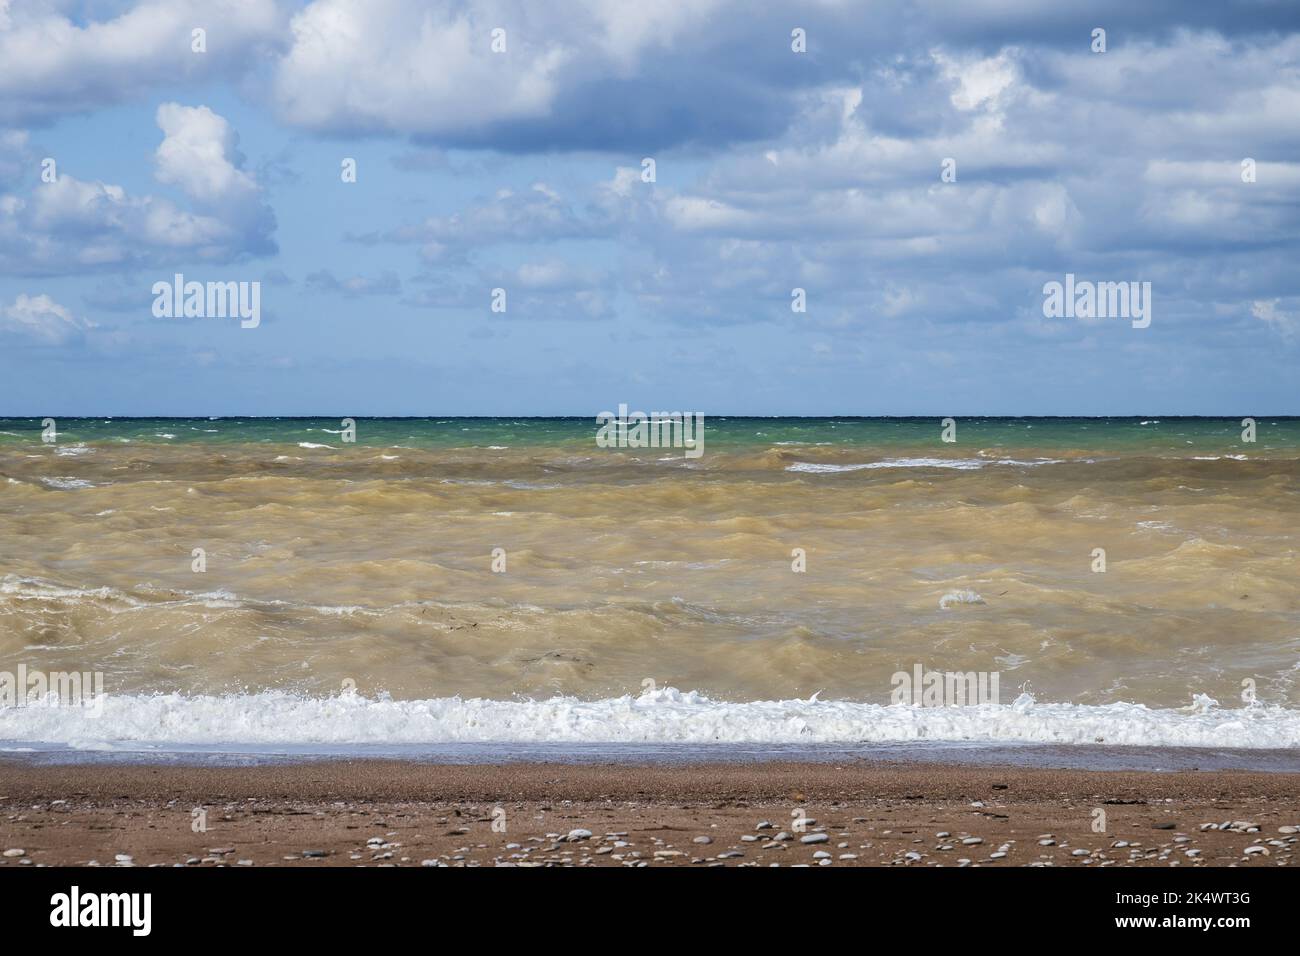 Paesaggio di spiaggia vuota con acqua di mare burrascoso, foto naturale scattata sulla costa del Mar Nero in una giornata di sole, Crimea Foto Stock